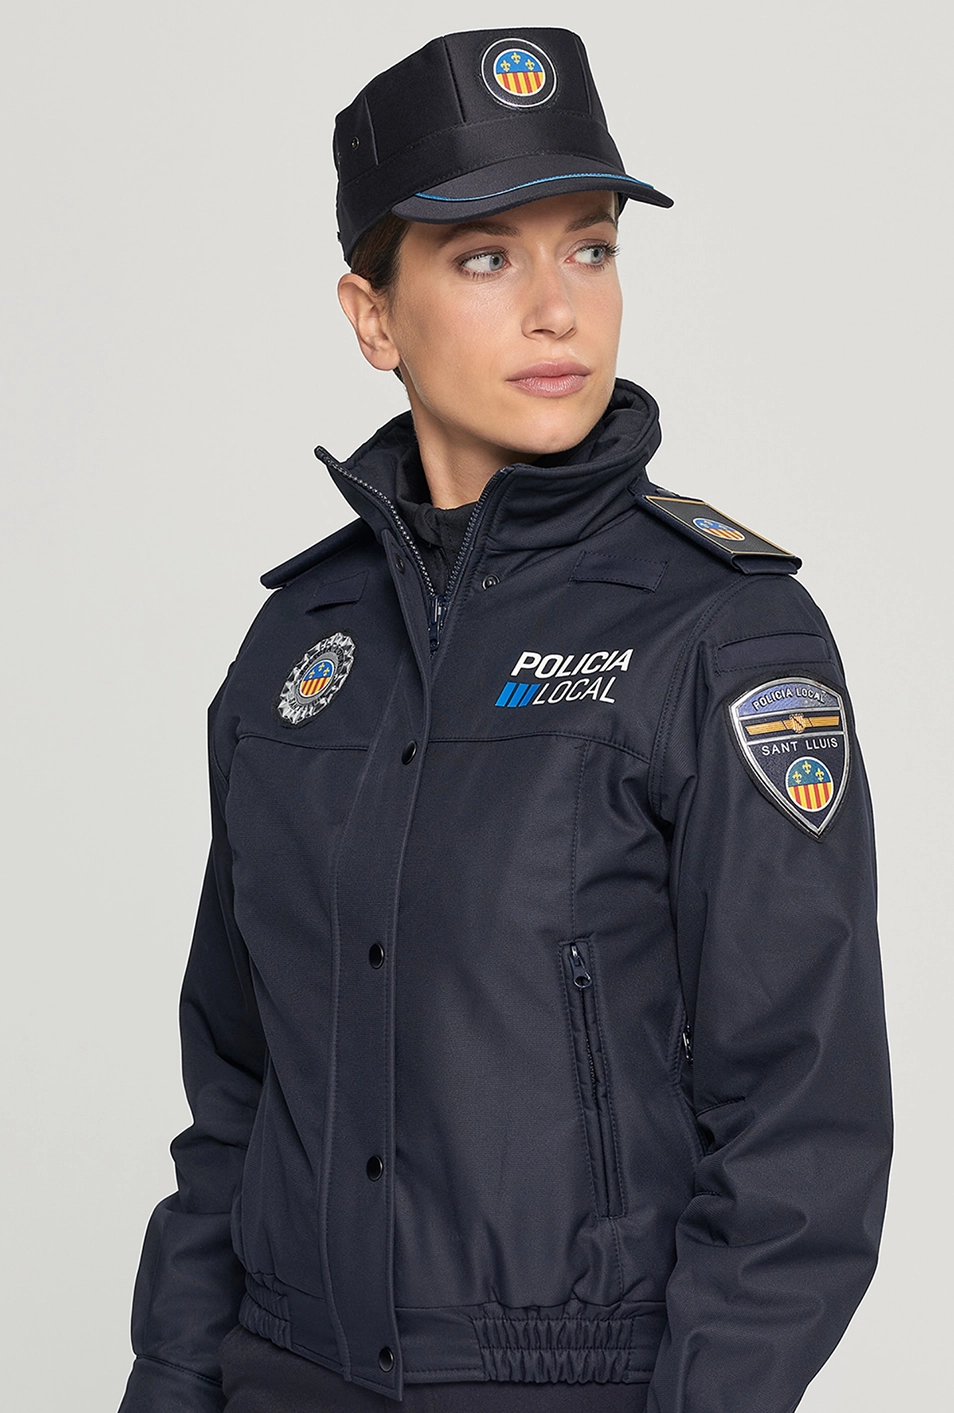 uniformes policía local de Baleares cazadora windshell